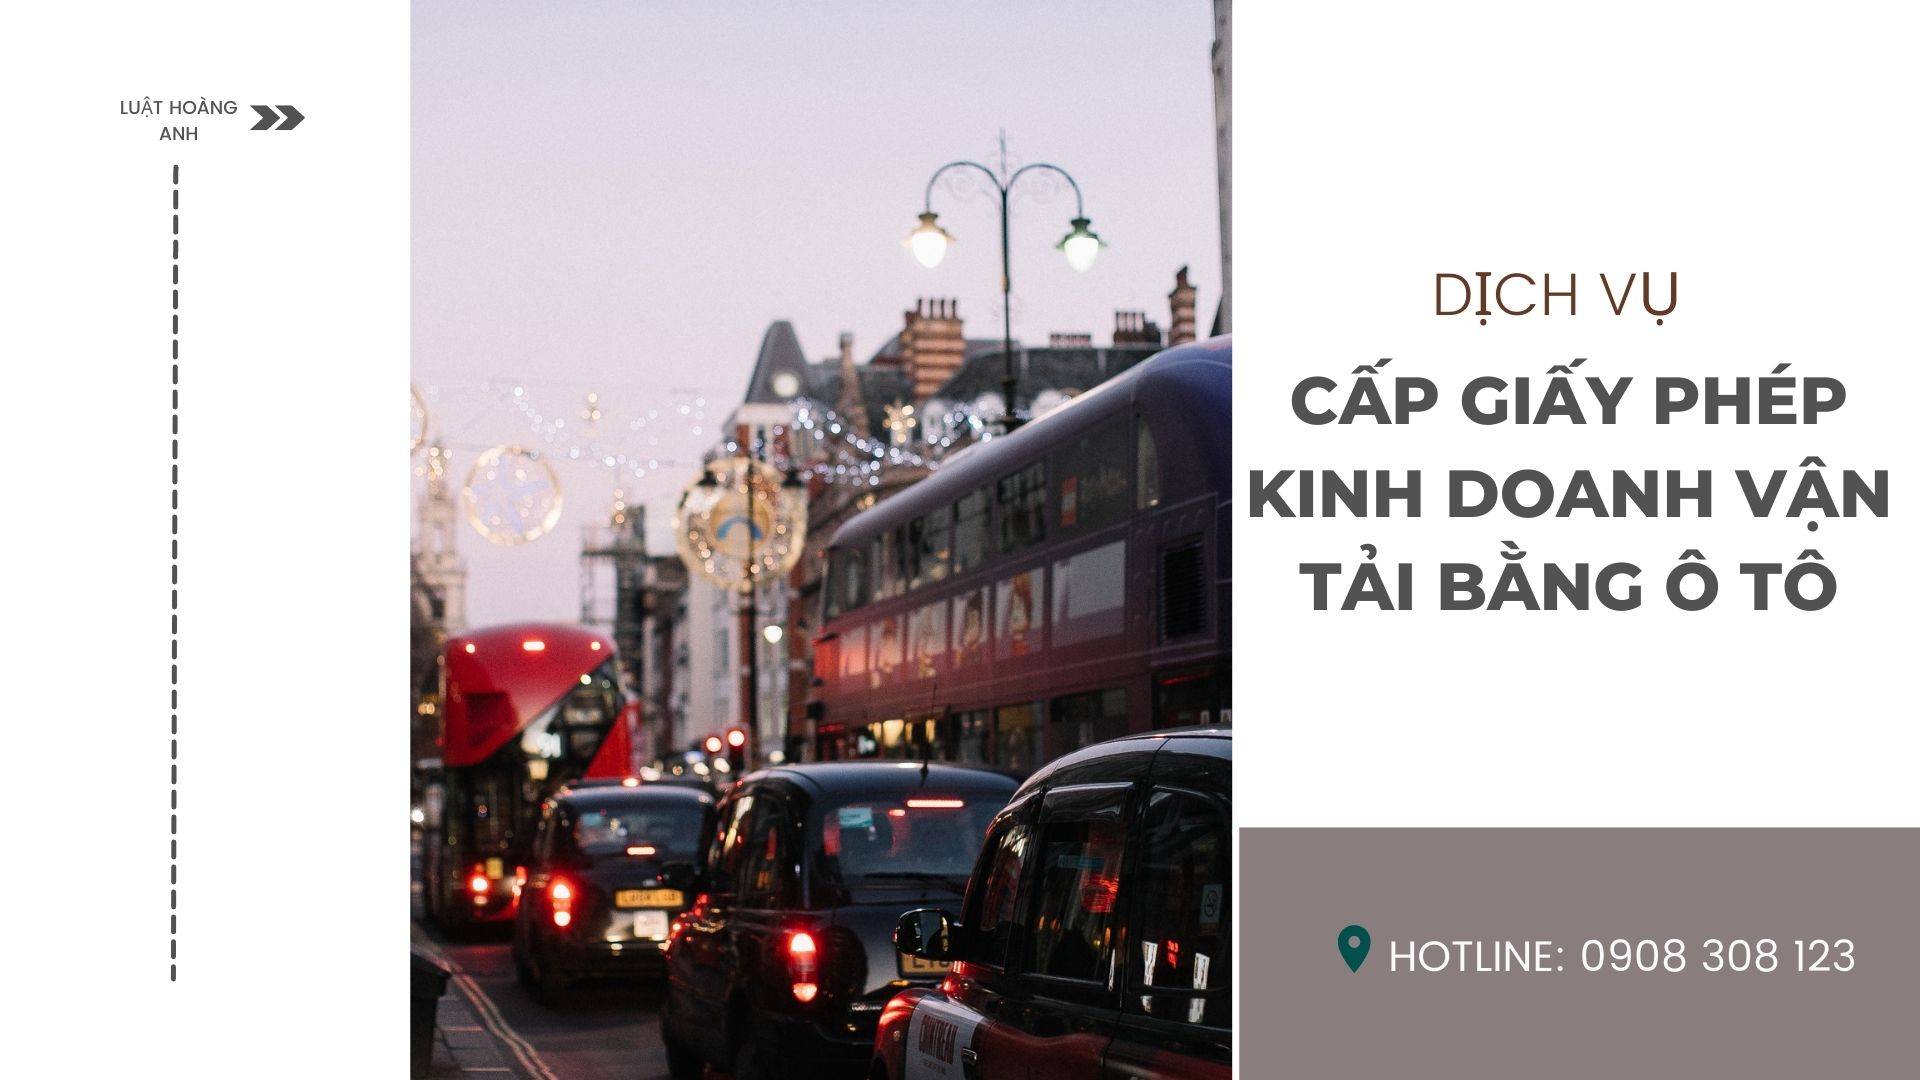 Dịch vụ cấp giấy phép kinh doanh vận tải bằng ô tô tại thành phố Hà Nội